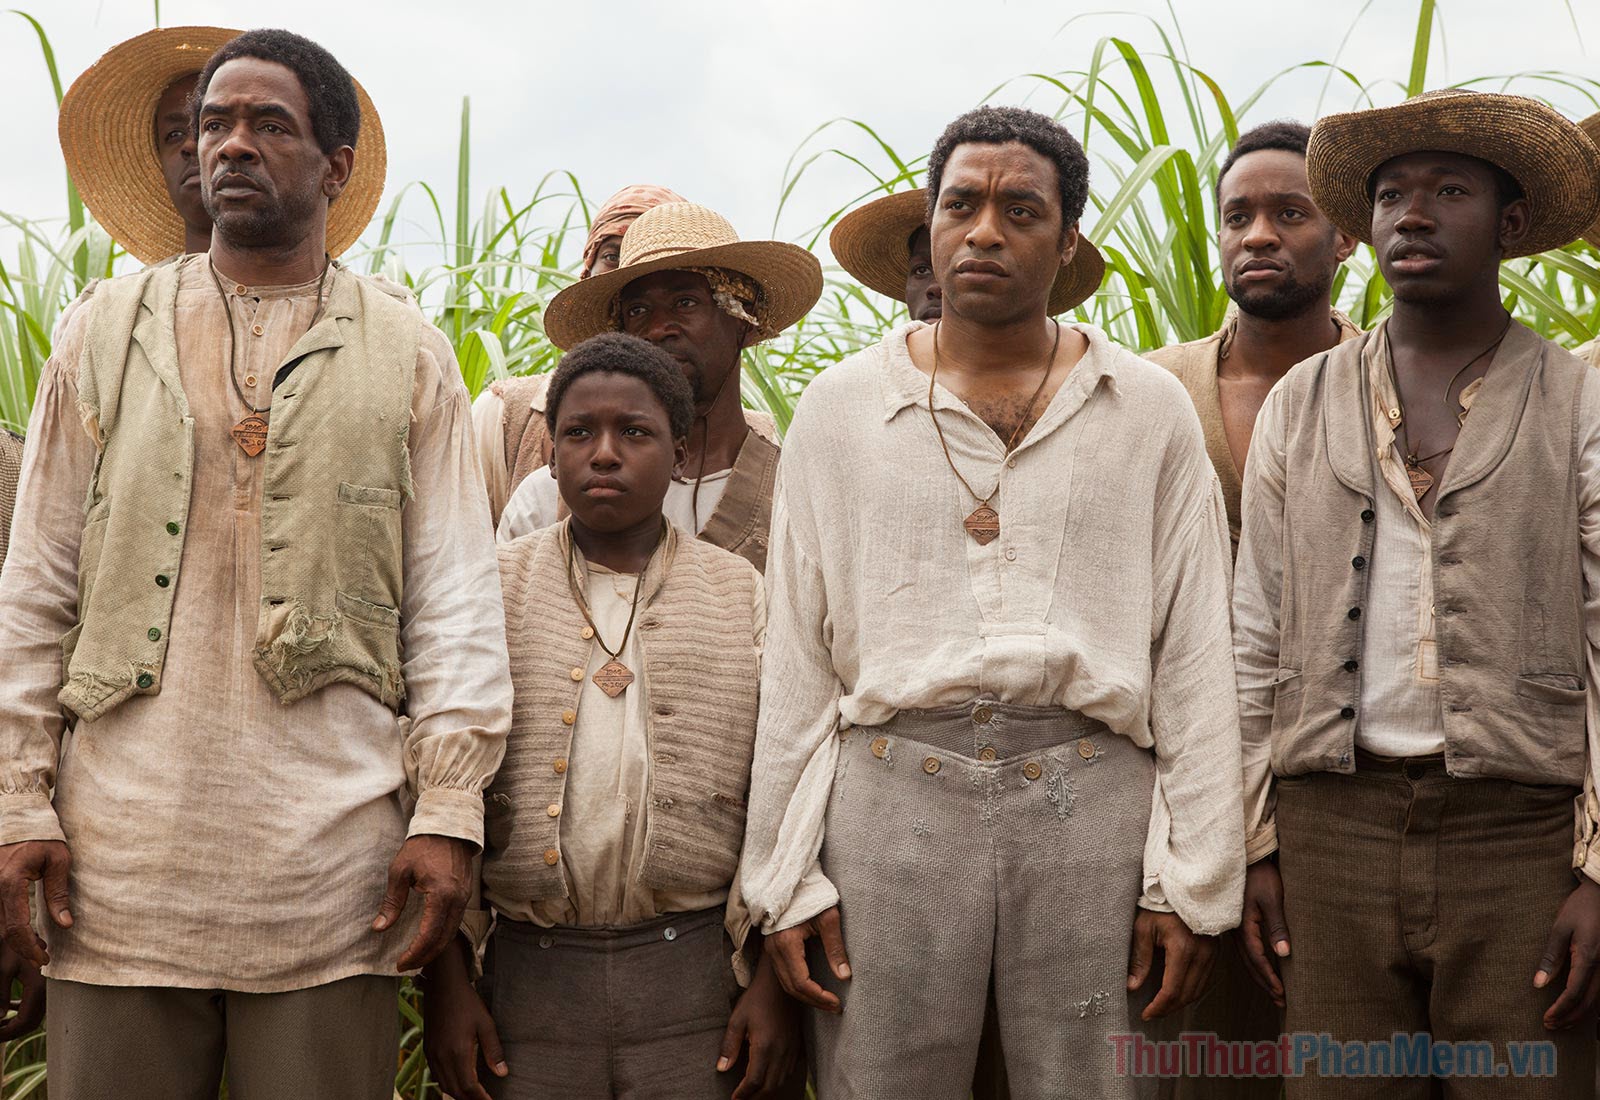 12 Years a Slave (2013) – 12 Năm Nô Lệ